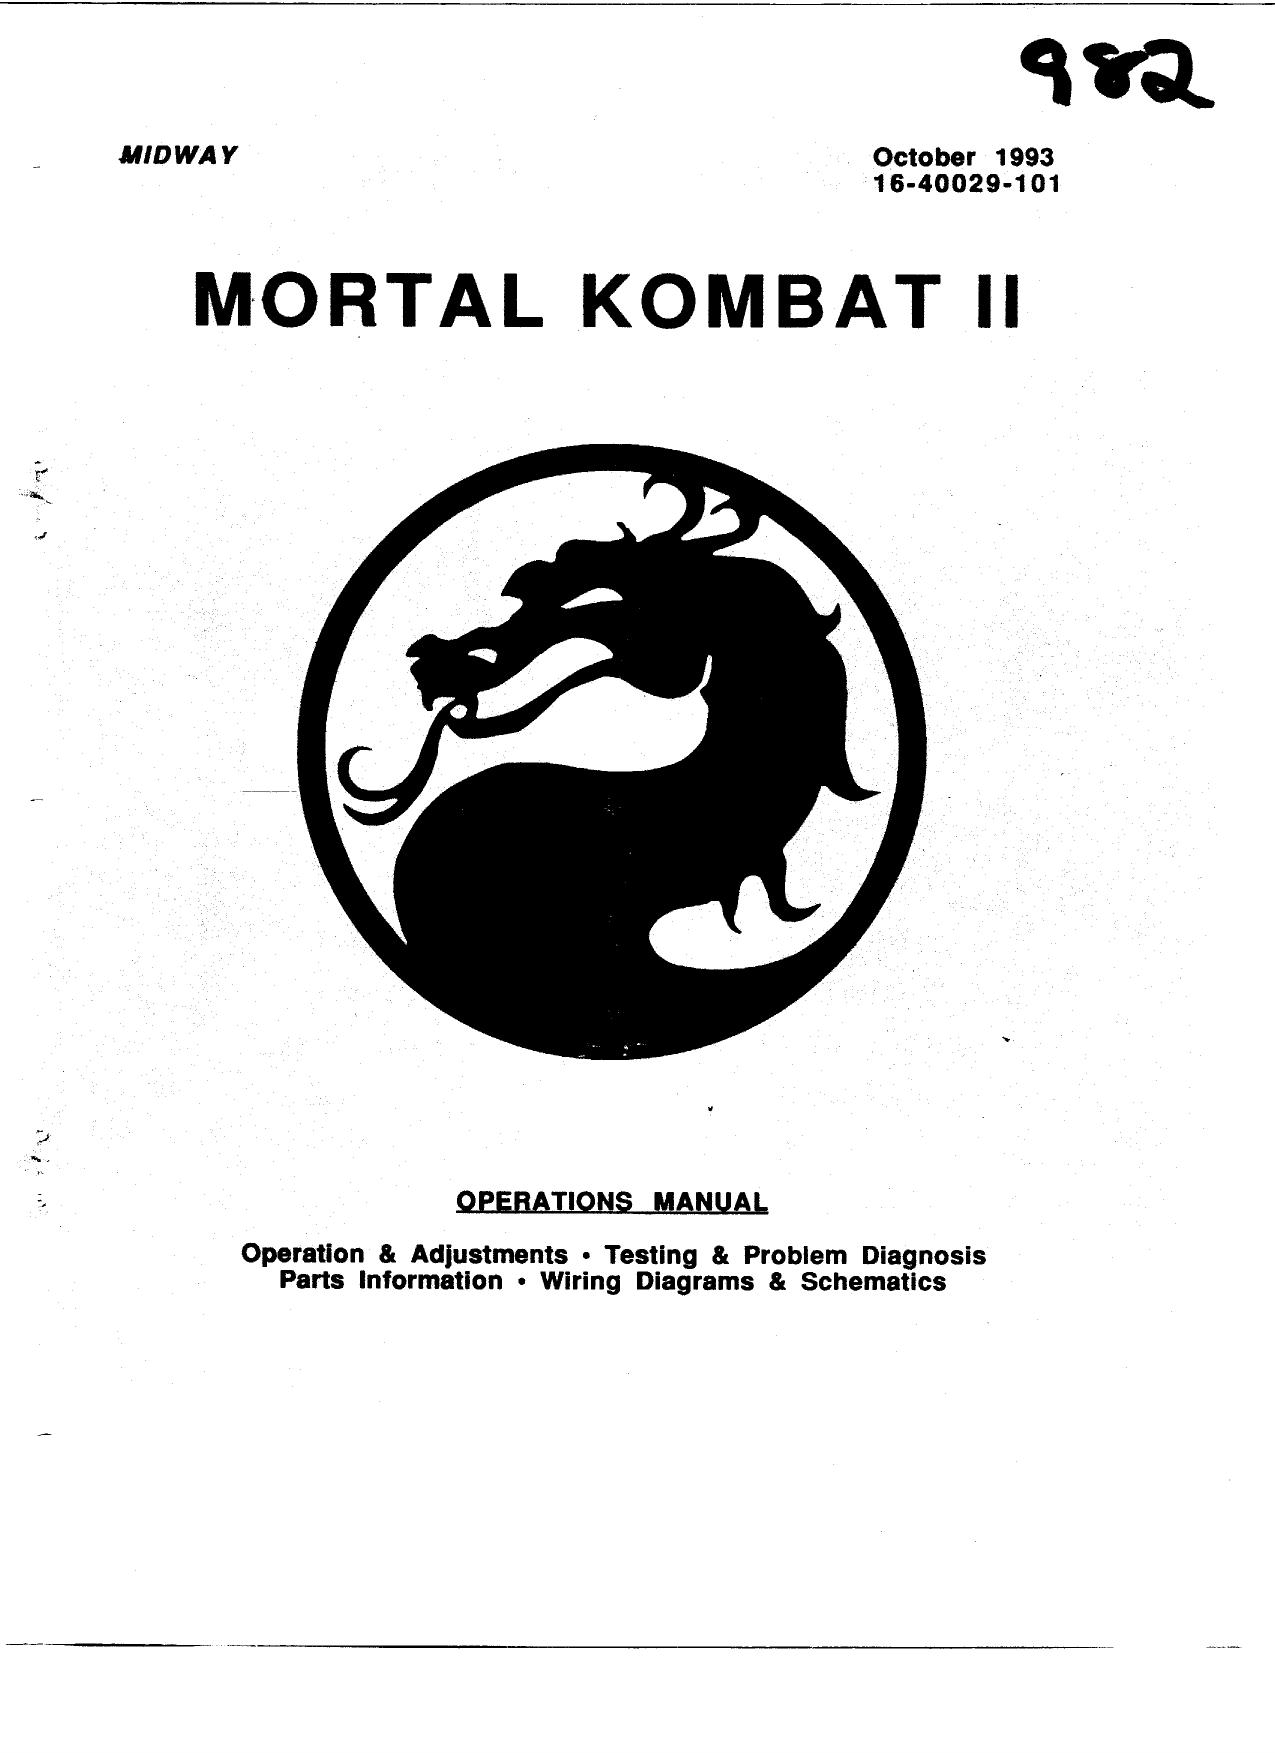 Mortal Kombat II (Operations) (U)